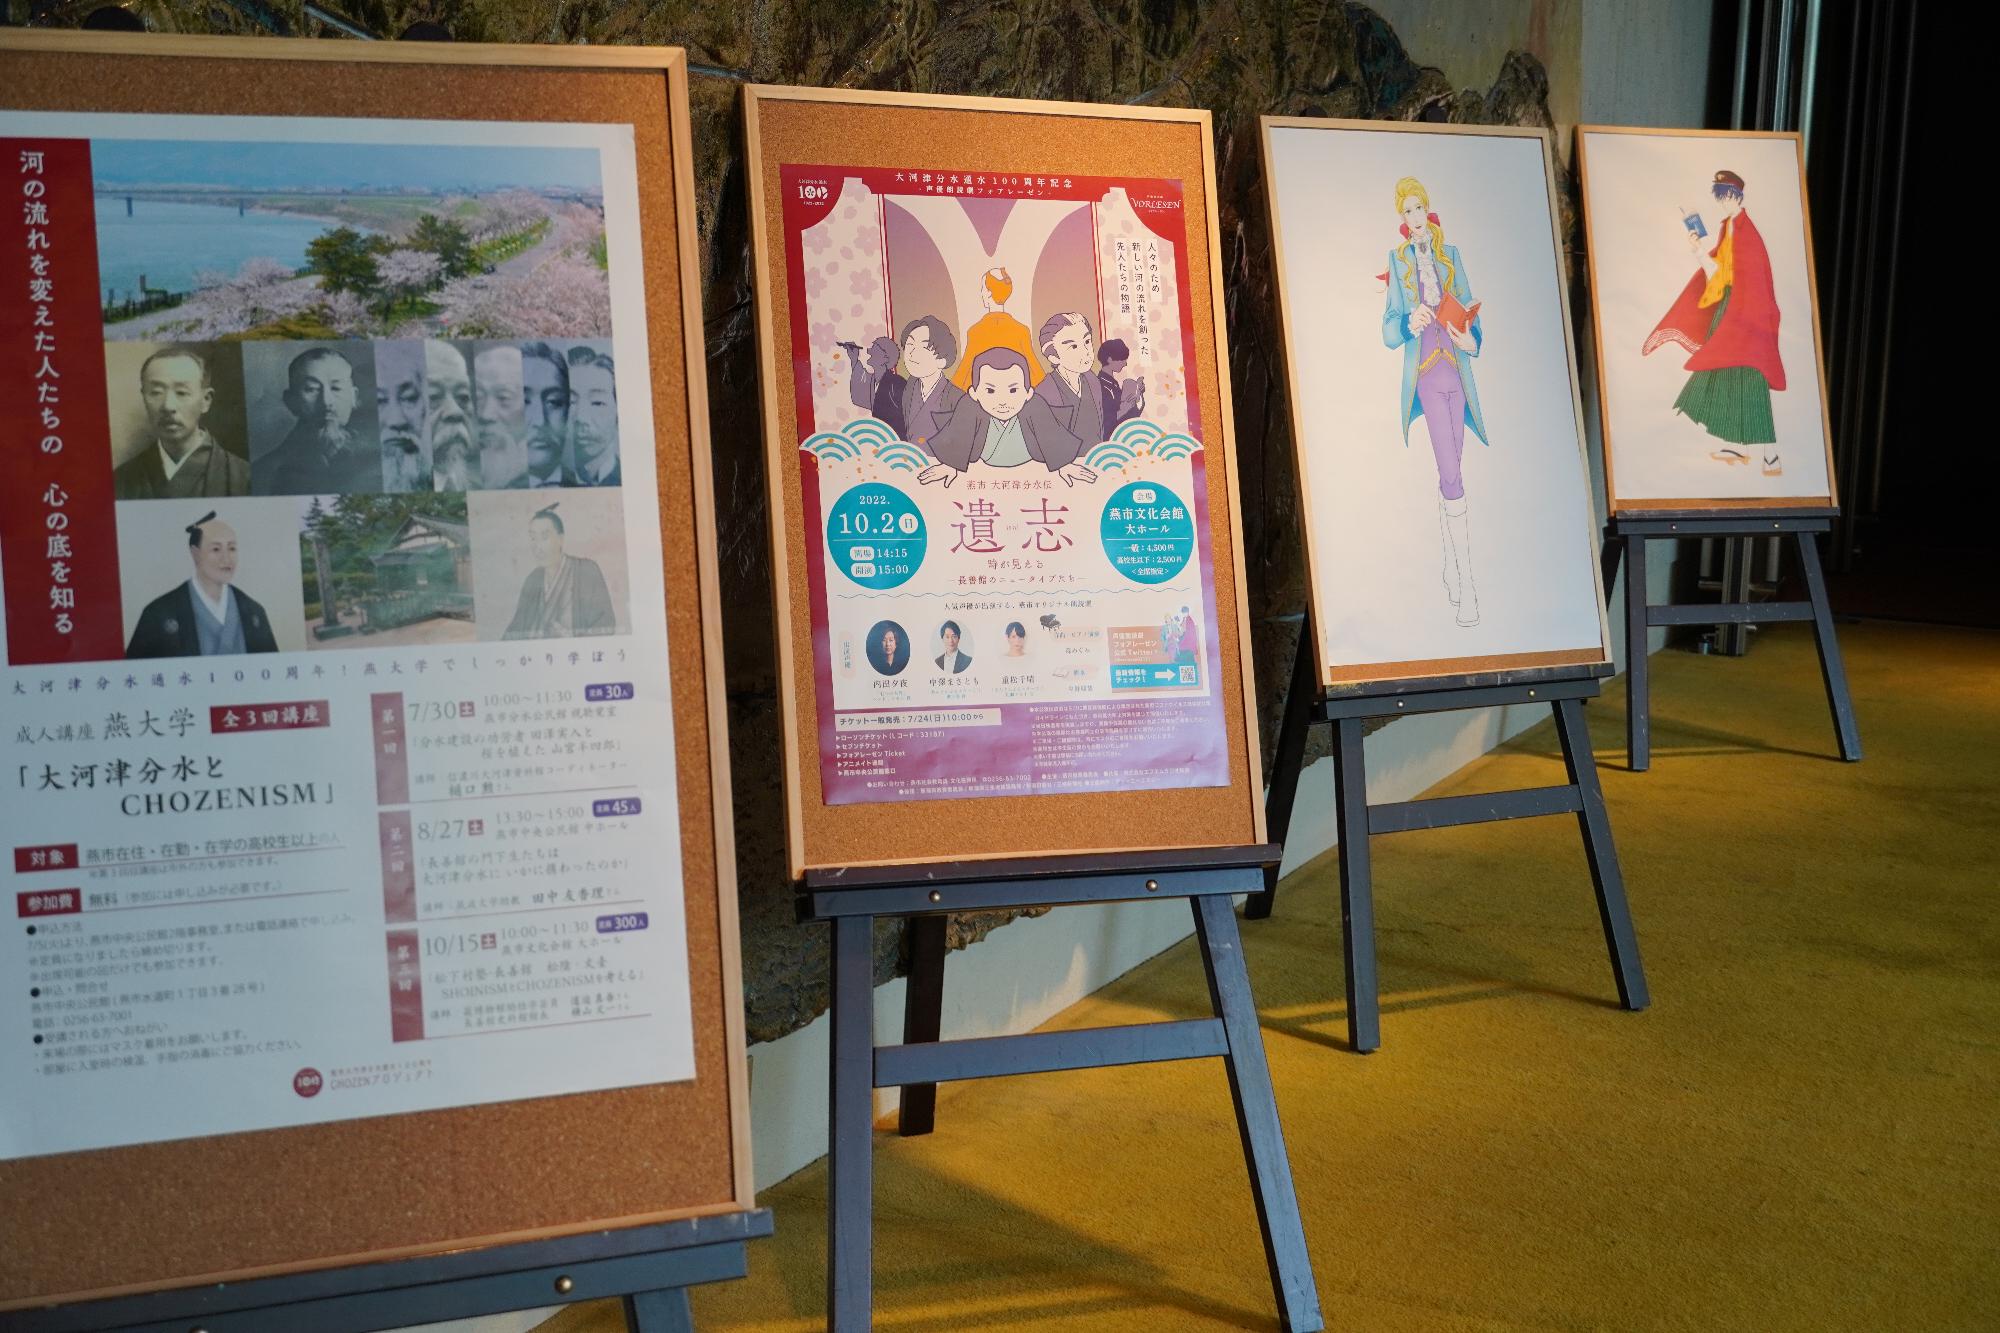 イベントのポスターやキャラクターのパネル展示